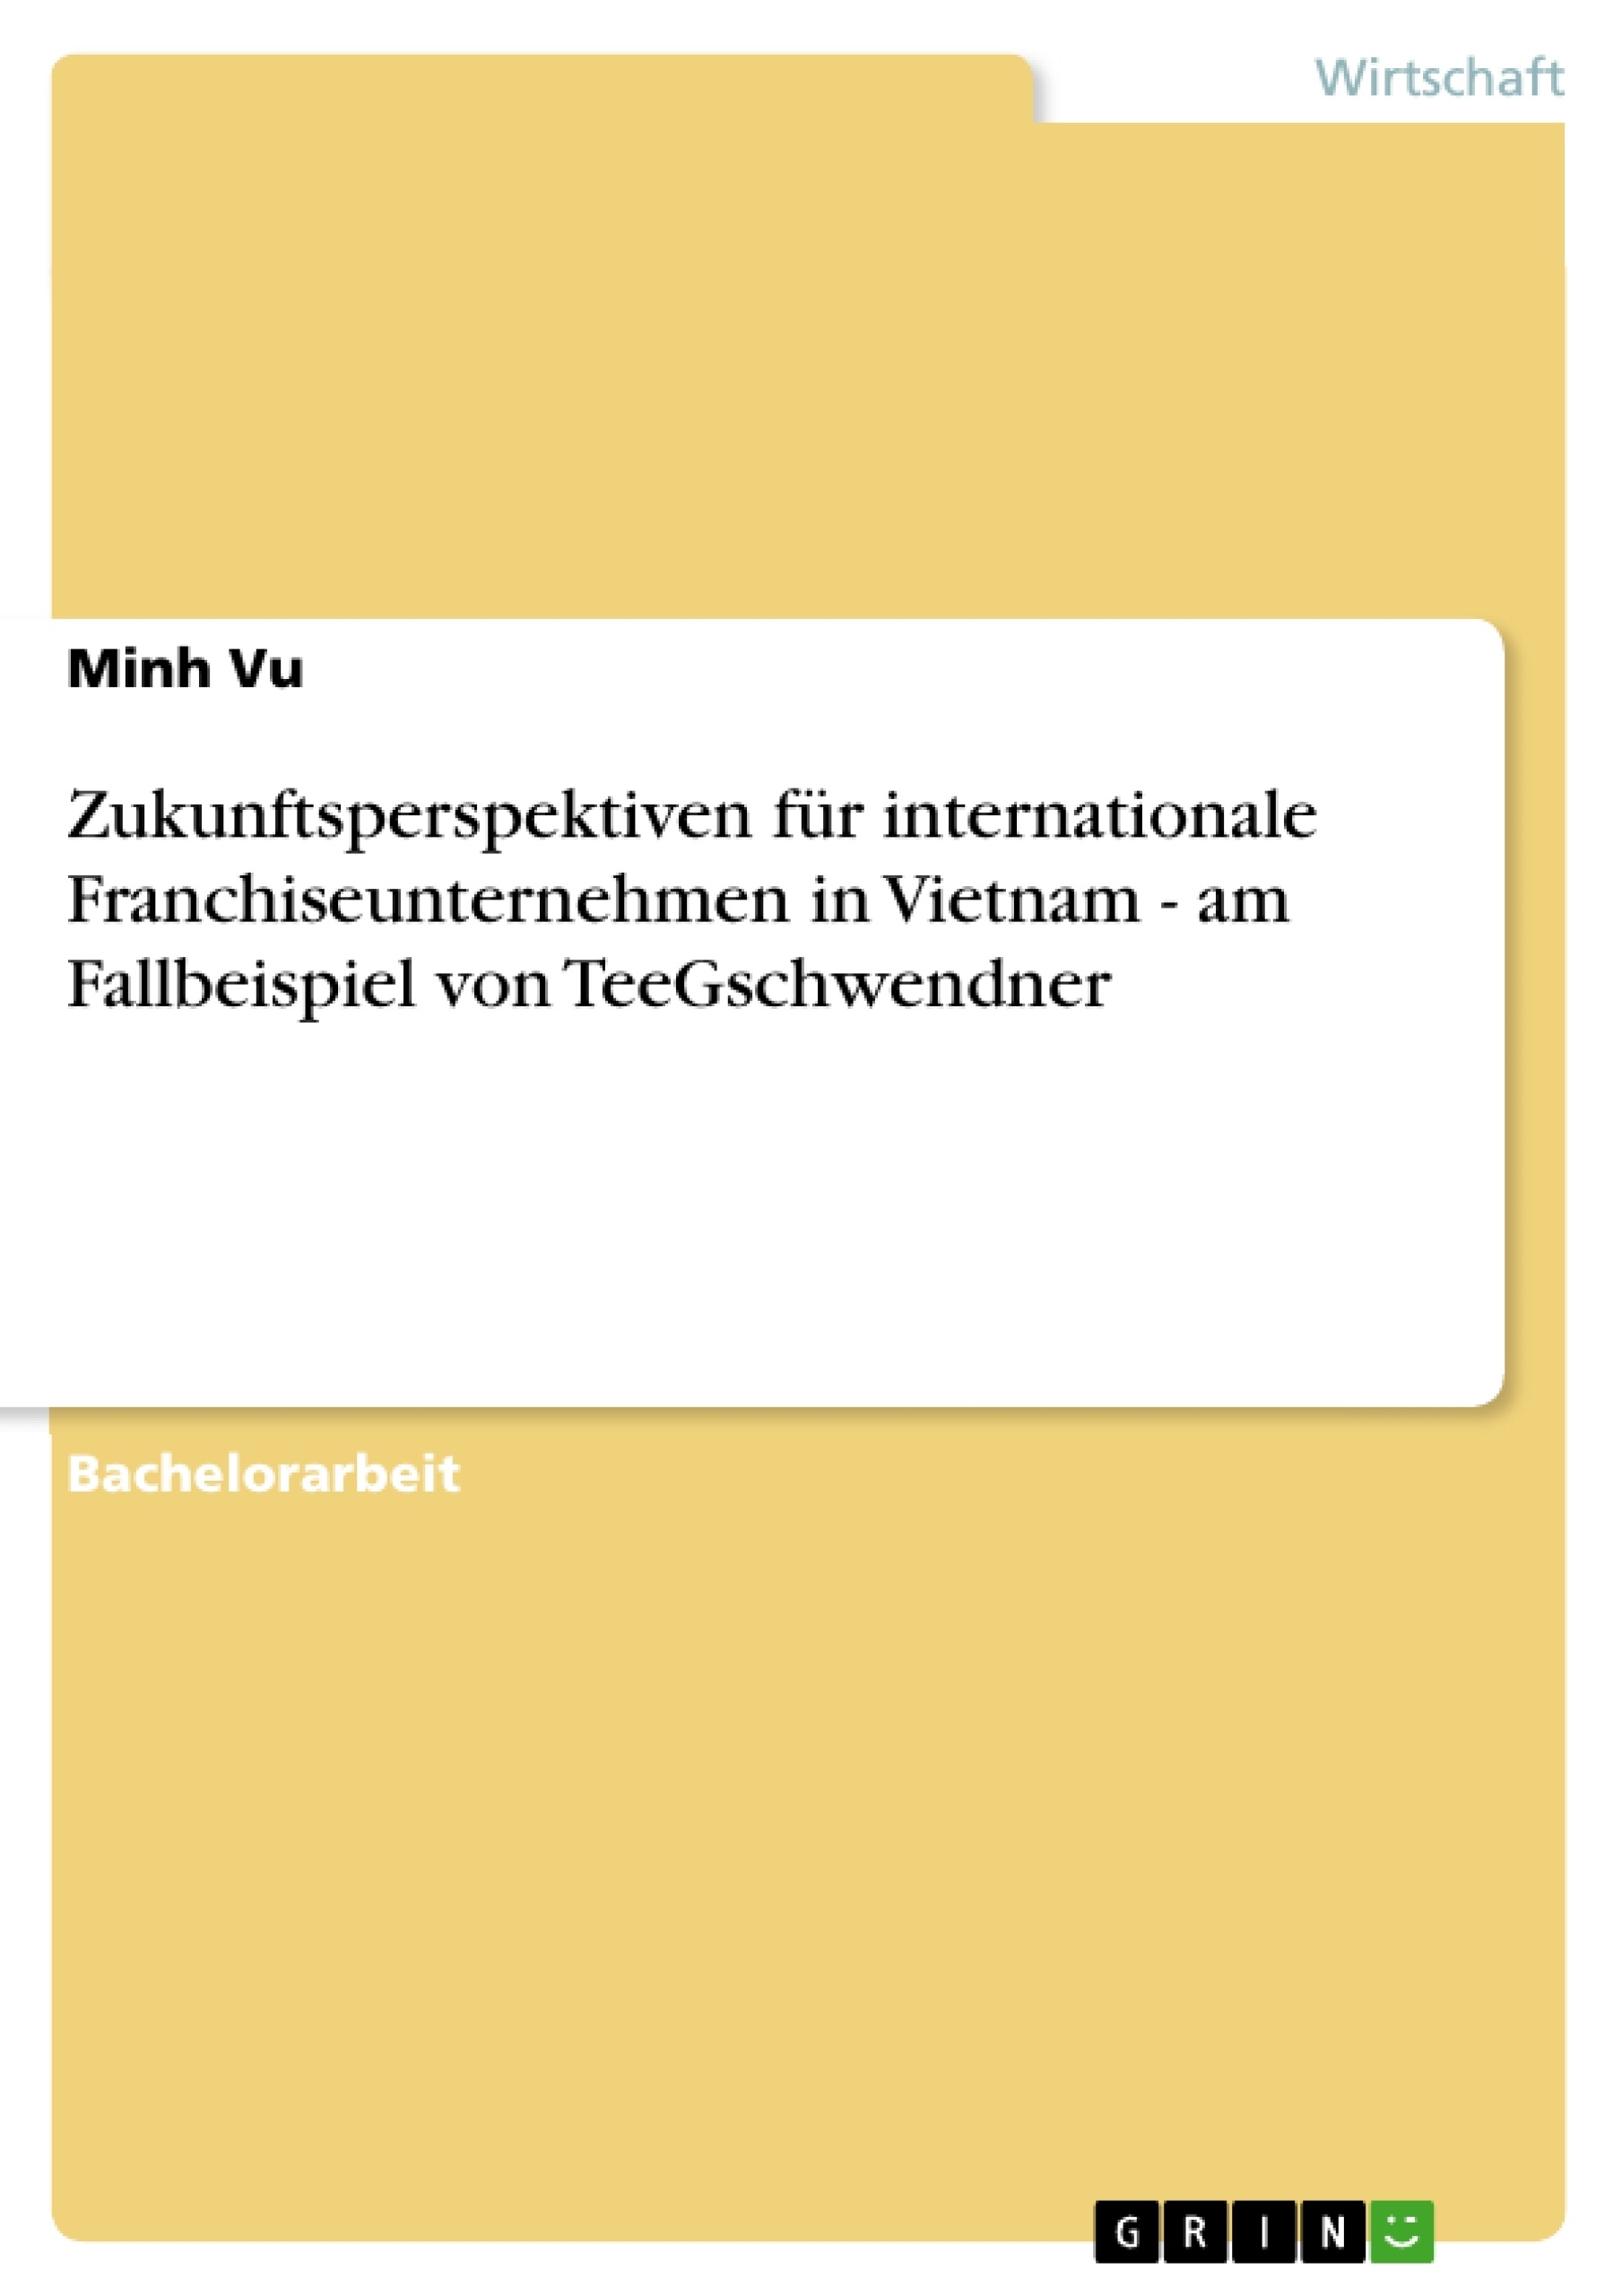 Title: Zukunftsperspektiven für internationale Franchiseunternehmen in Vietnam - am Fallbeispiel von TeeGschwendner